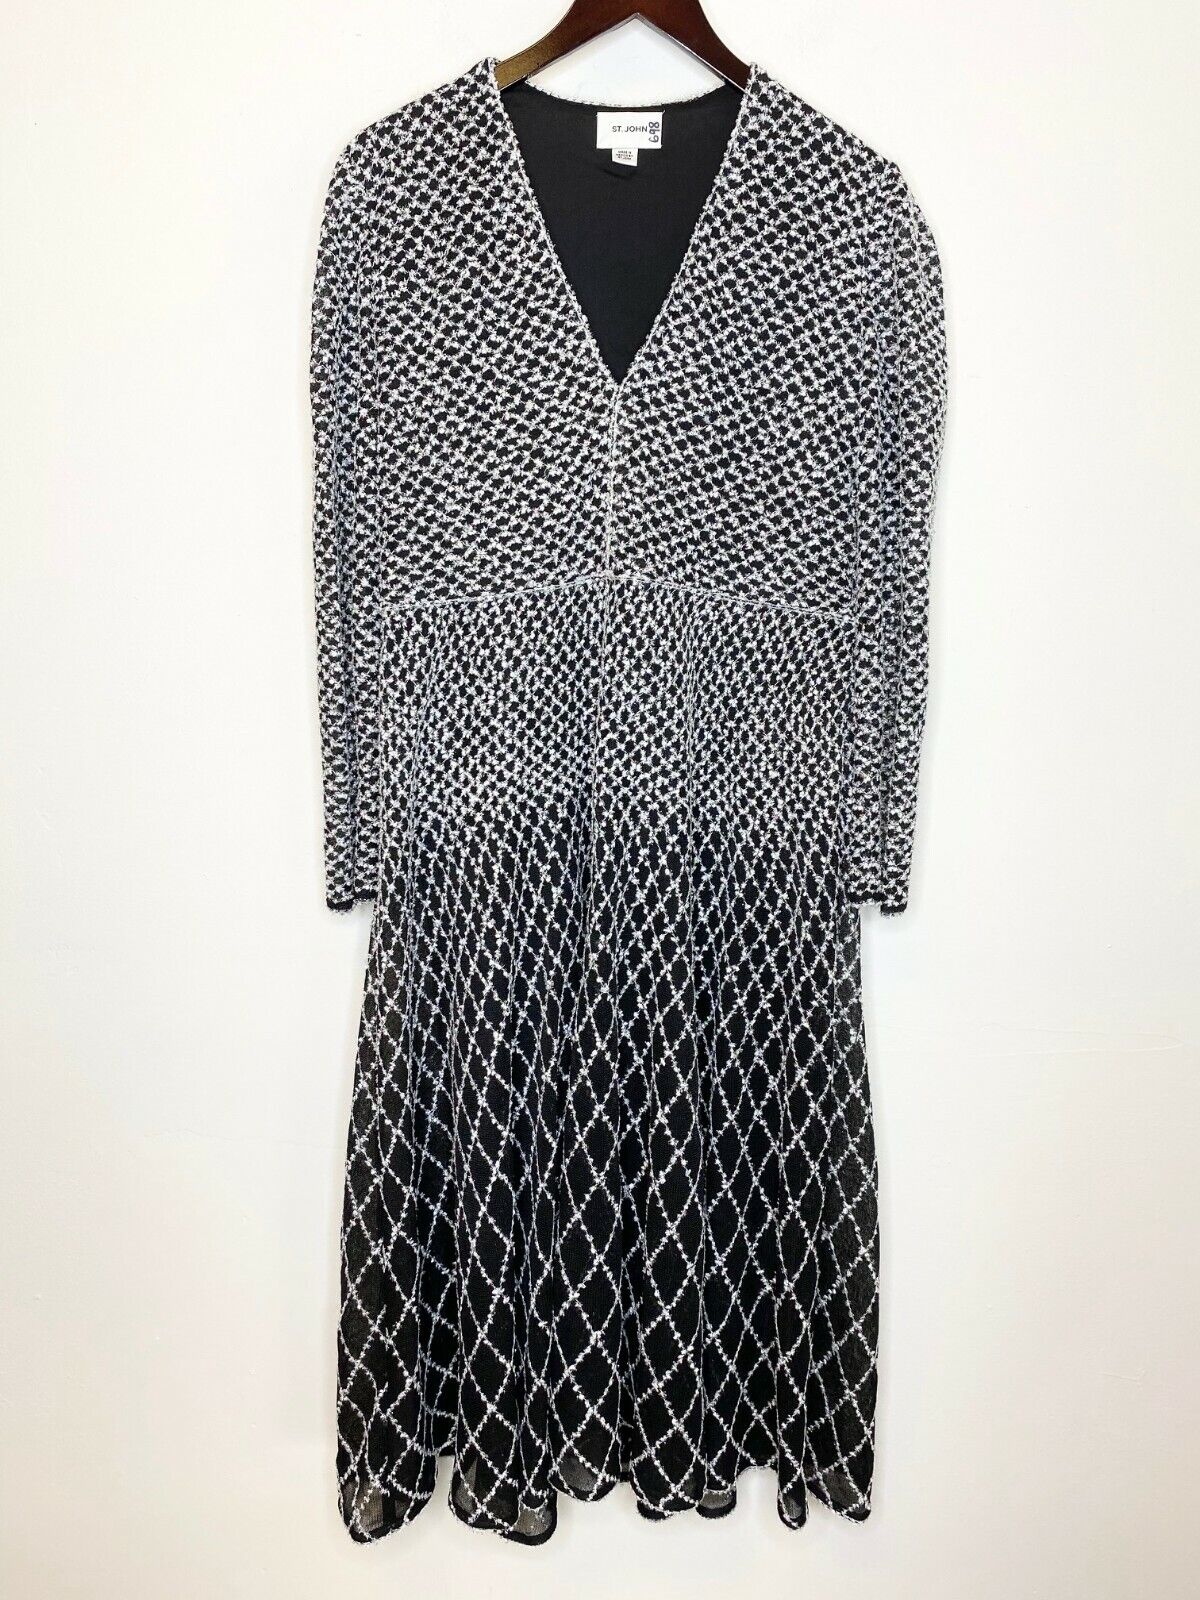 ST. JOHN Black Silver White Long Sleeve Diamond Knit Fit & Flare Midi Dress  12US